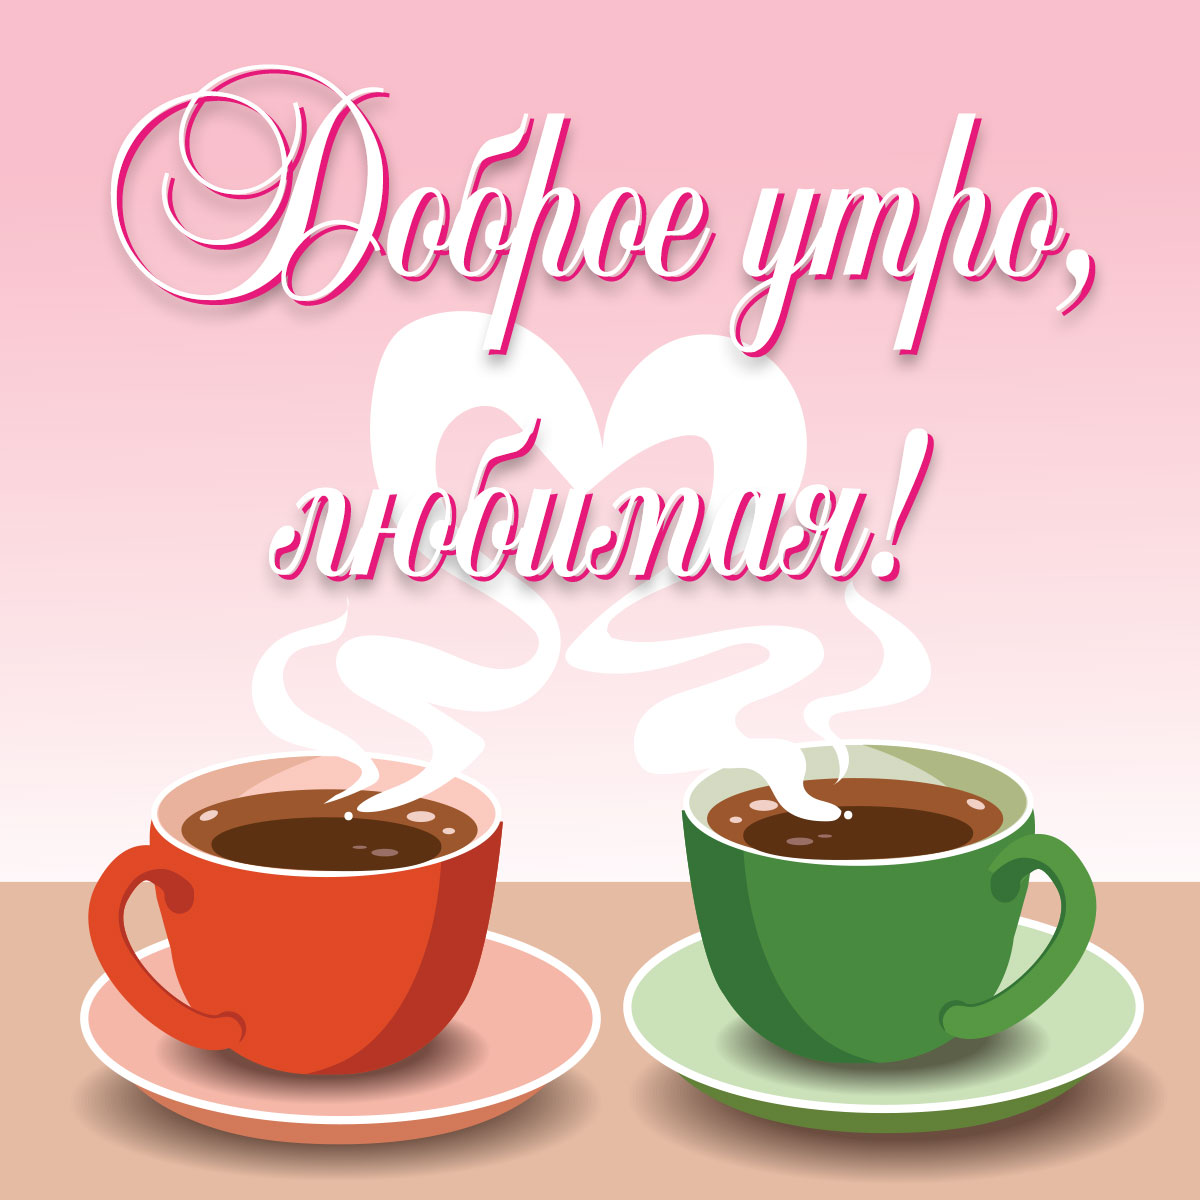 Красивая картинка - красная и зелёная кофейные чашки и надпись доброе утро, любимая!